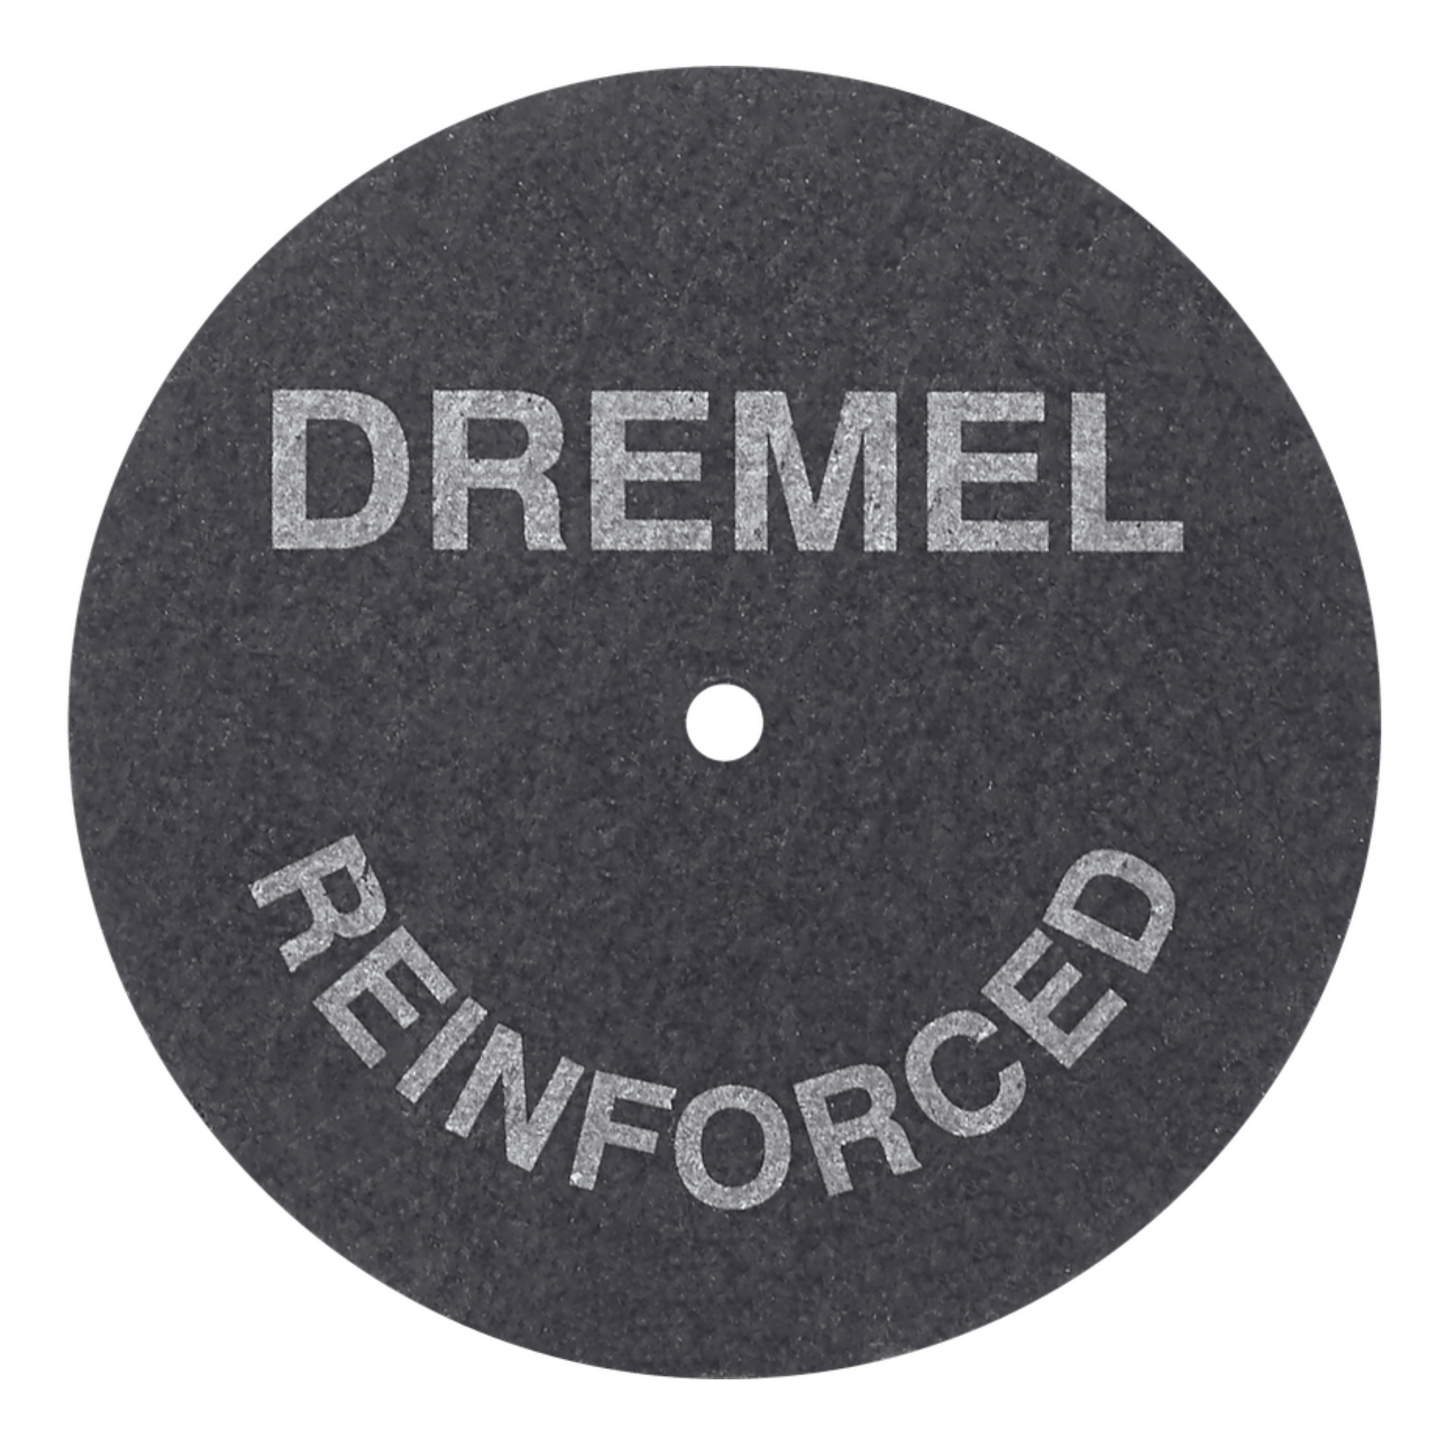 Dremel 426 - 1 Pack (5 x pieces) 1-1/4 Inch Diameter Fiberglass Reinforced Cut-Off Wheels - 426